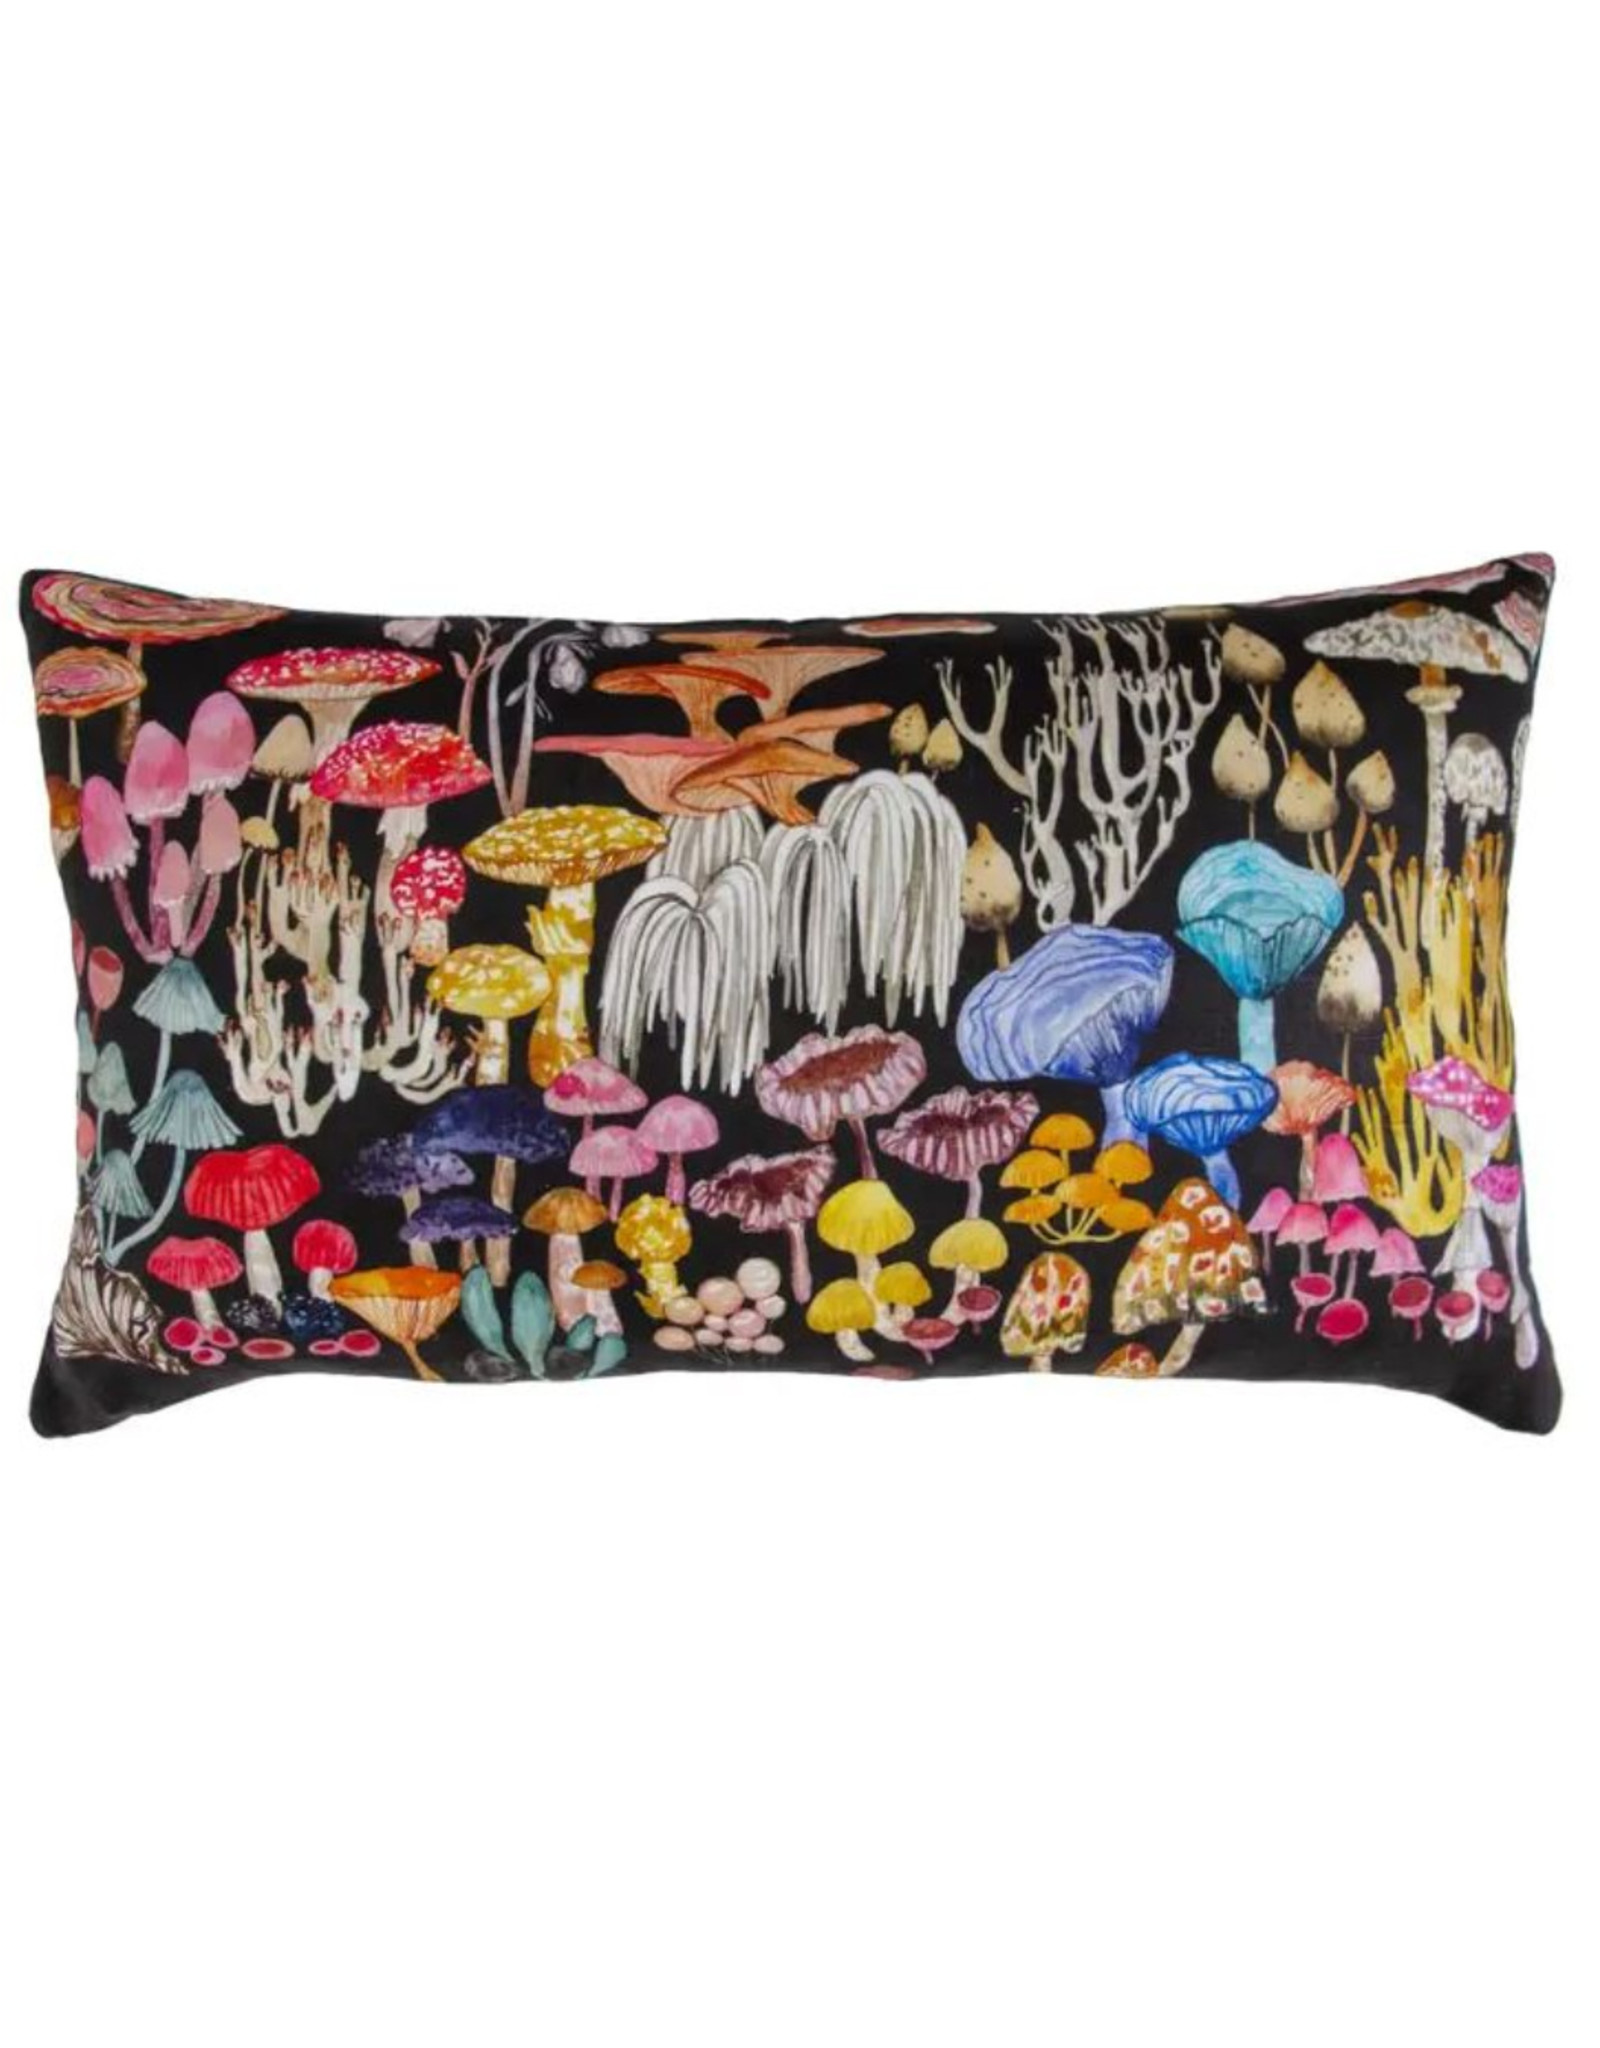 Magic Mushroom Pillow